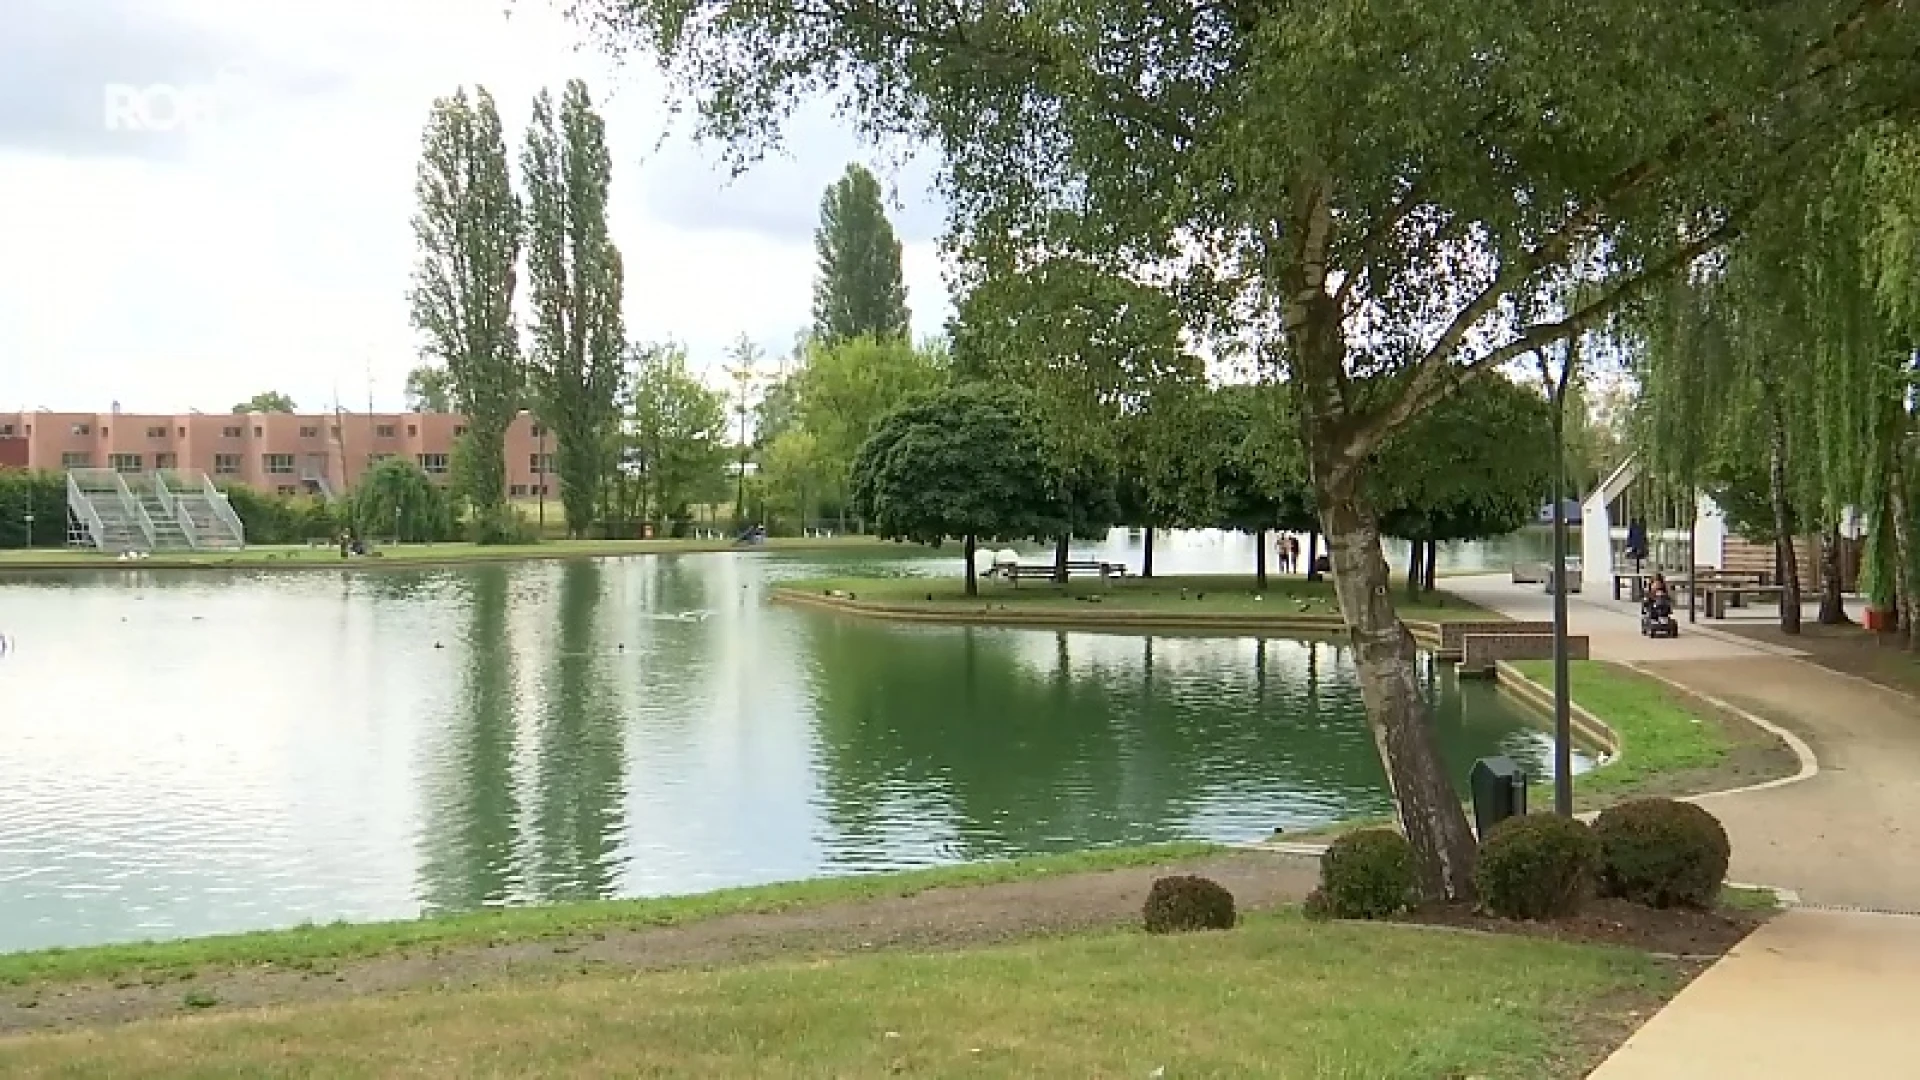 200 Tienenaars vragen om openluchtzwembad in Vianderpark, stad onderzoekt alternatief